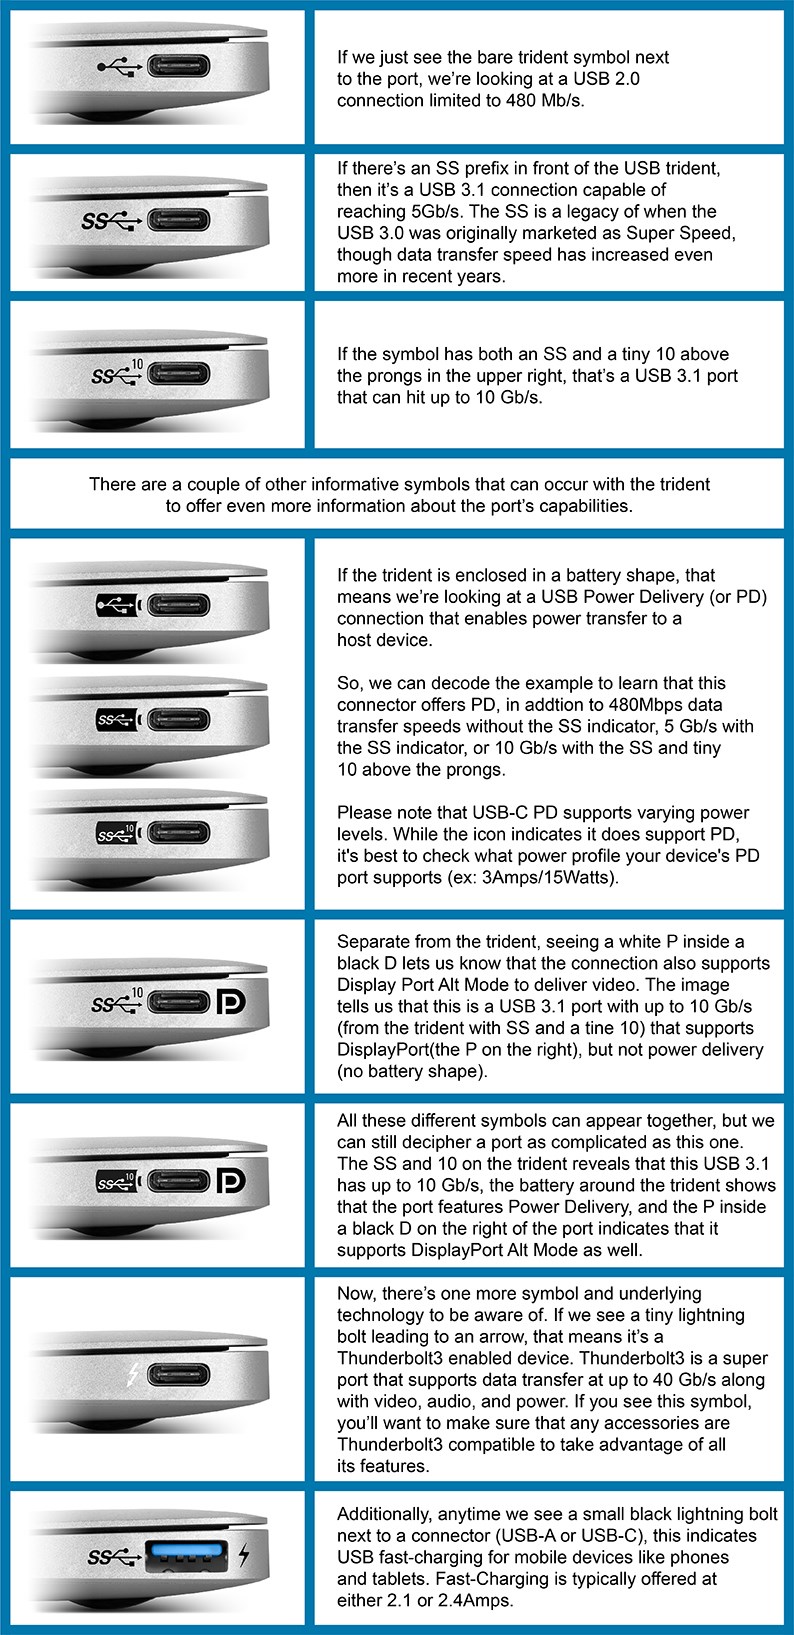 USB-C Explained